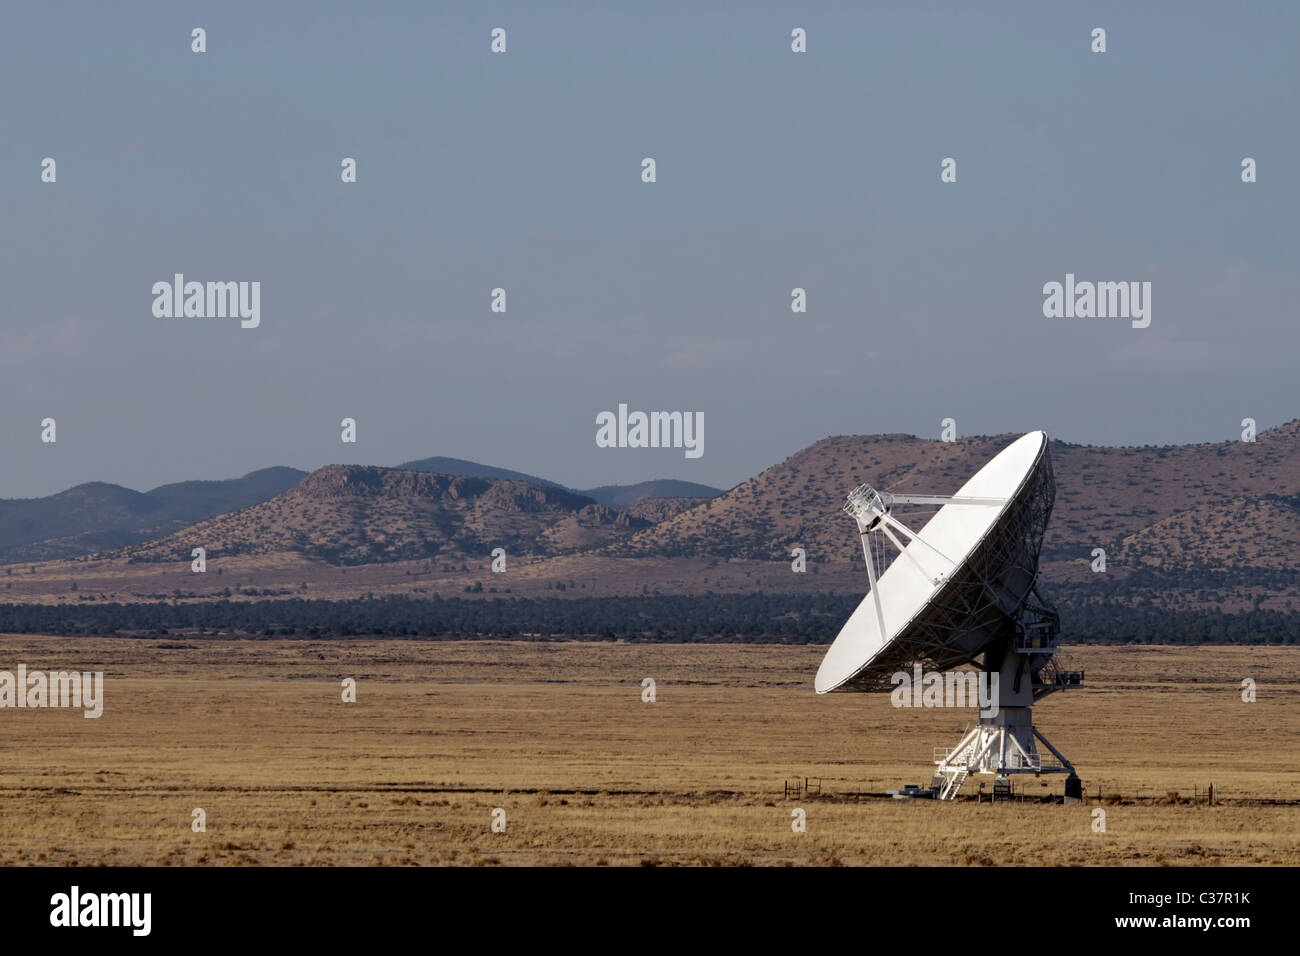 Very Large Array (VLA) Radio Astronomy Observatory situé près de Socorro, Nouveau Mexique, USA. Banque D'Images